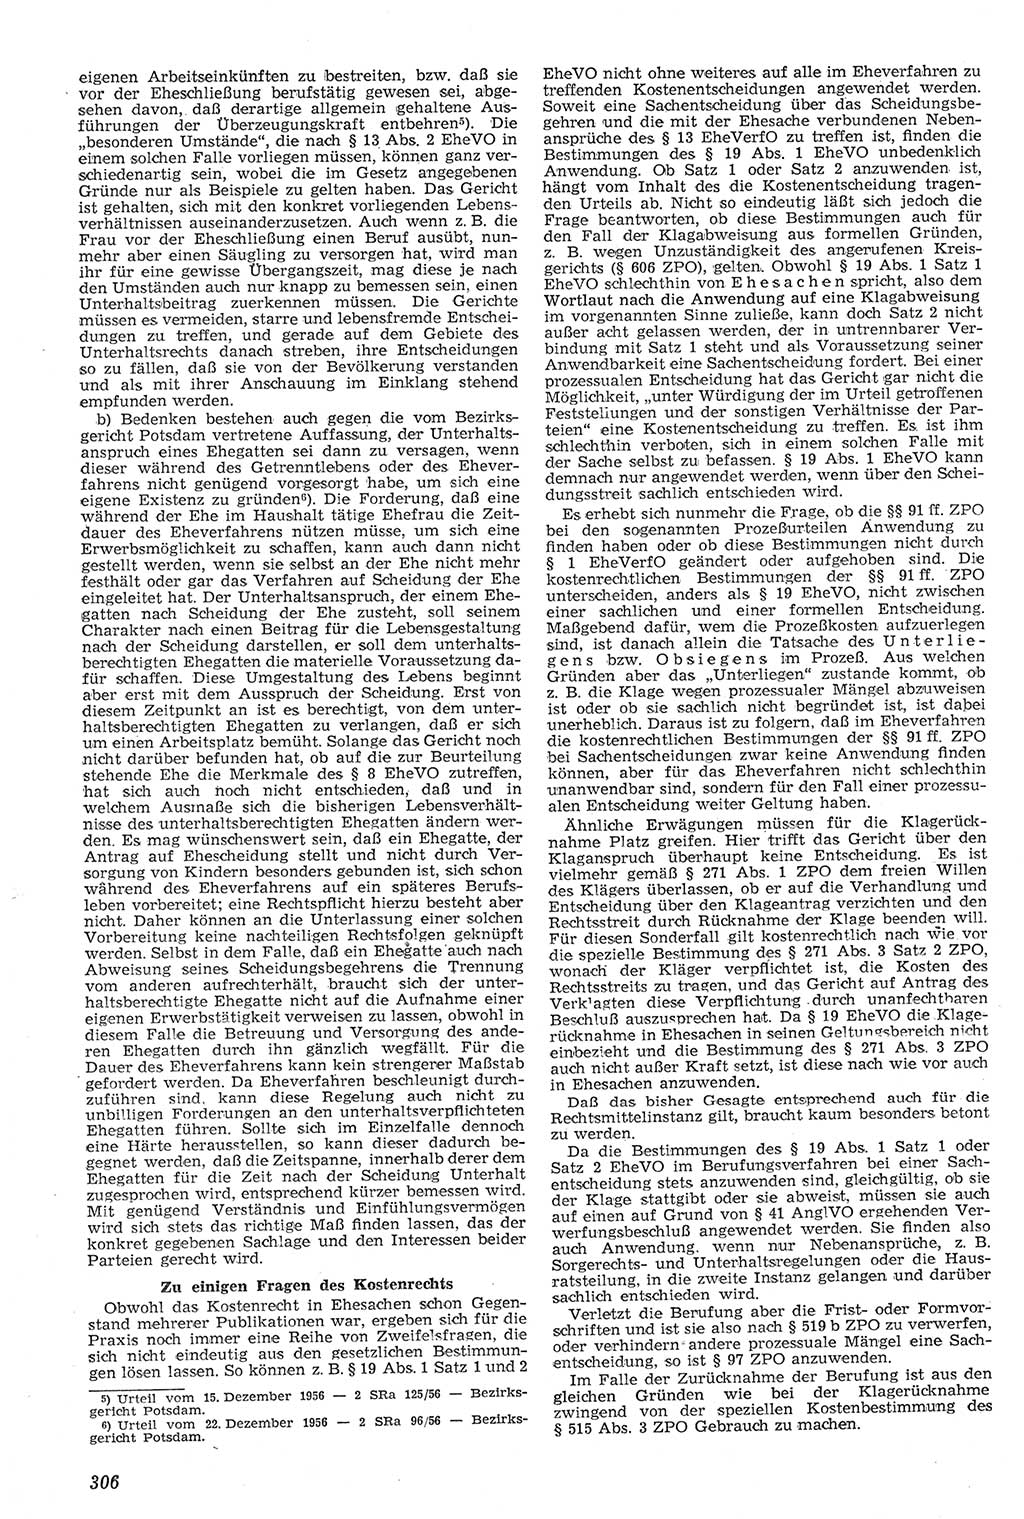 Neue Justiz (NJ), Zeitschrift für Recht und Rechtswissenschaft [Deutsche Demokratische Republik (DDR)], 11. Jahrgang 1957, Seite 306 (NJ DDR 1957, S. 306)